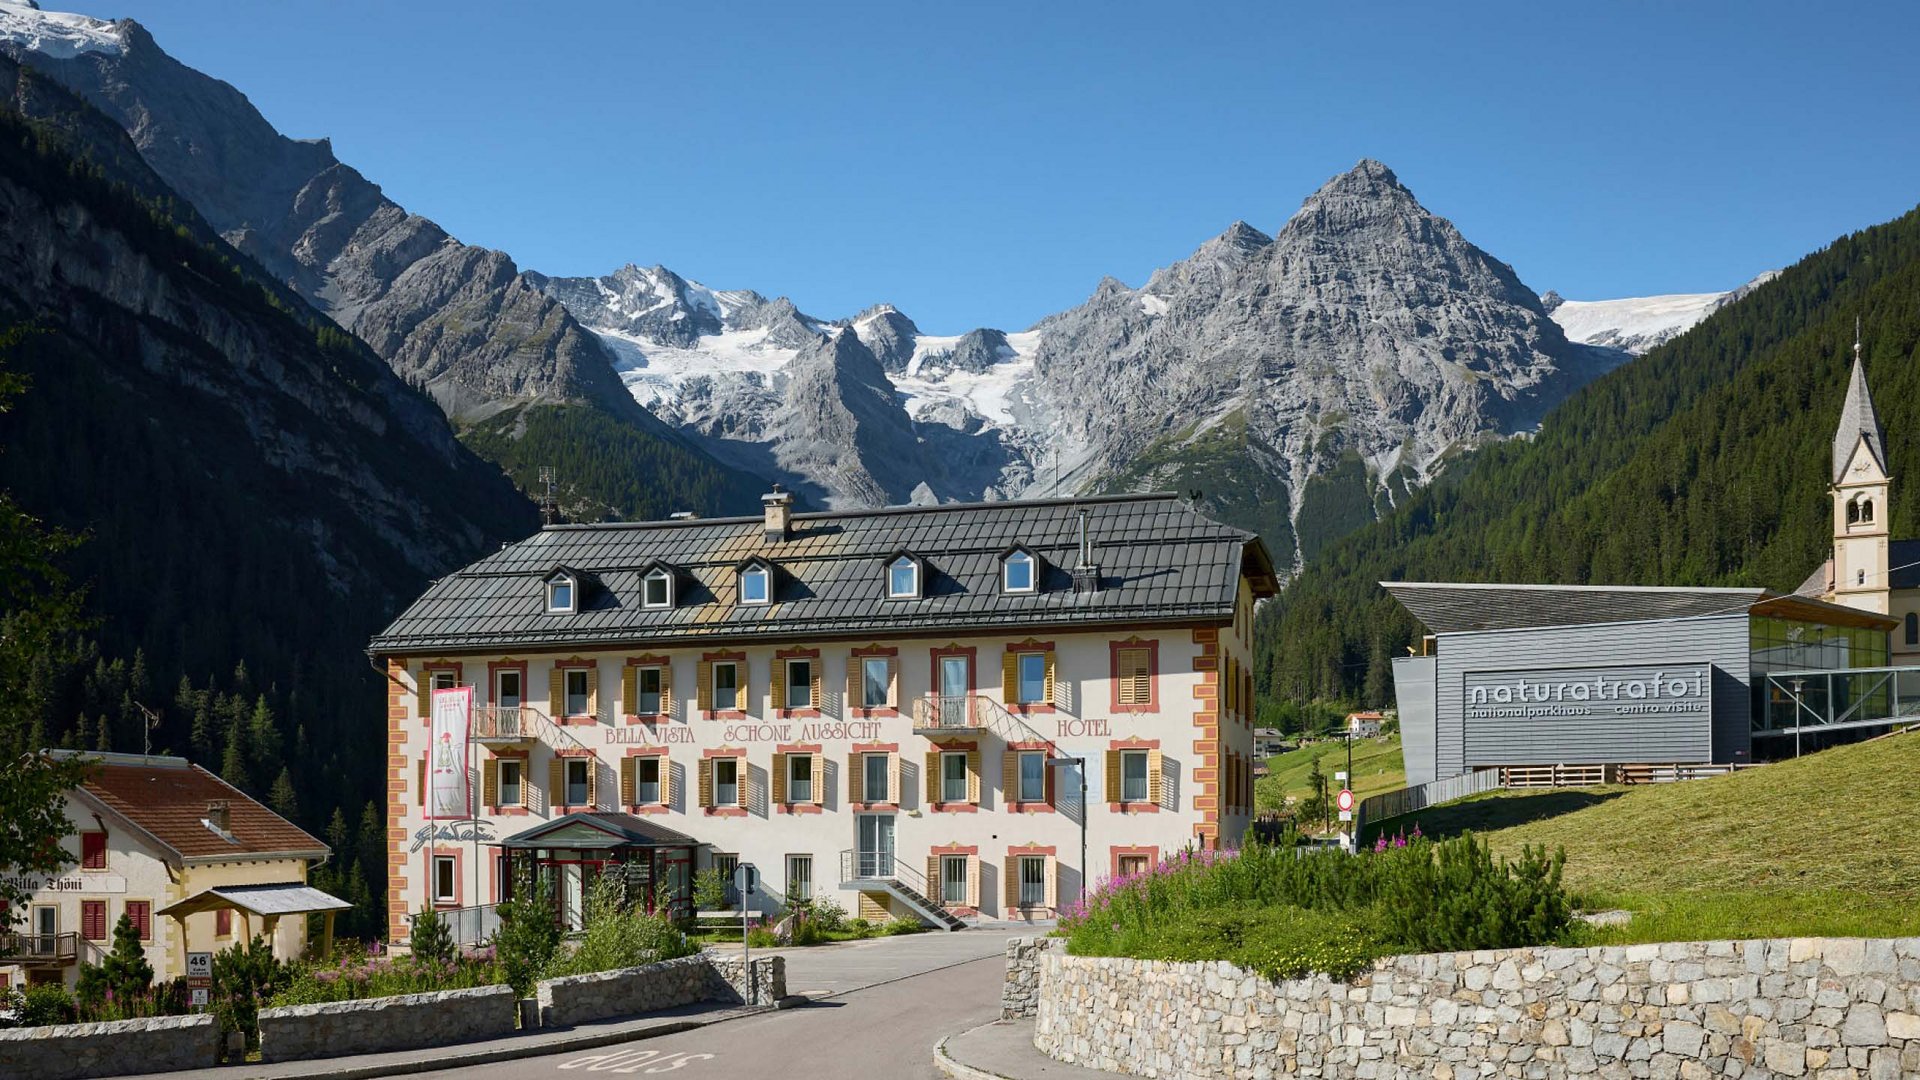 Das Hotel Bella Vista präsentiert sich stolz vor der imposanten Kulisse der schneebedeckten Südtiroler Alpen, eine Einladung zu Luxus und Erholung in der Natur.